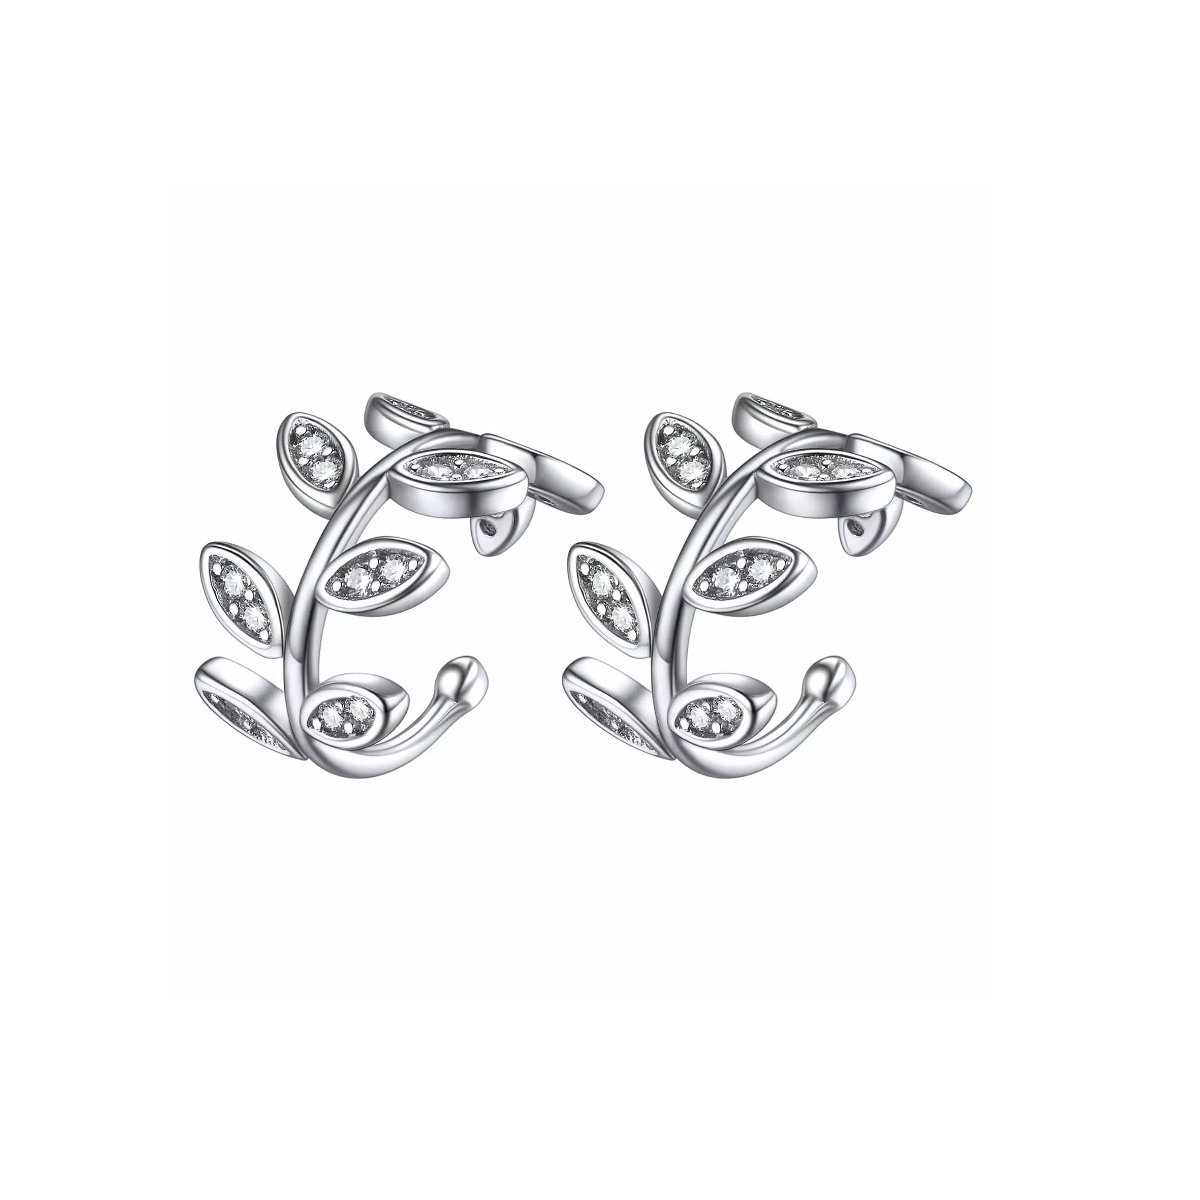 ChicSilver 925 Sterling Silver CZ Leaf Ear Cuff Earrings For Women